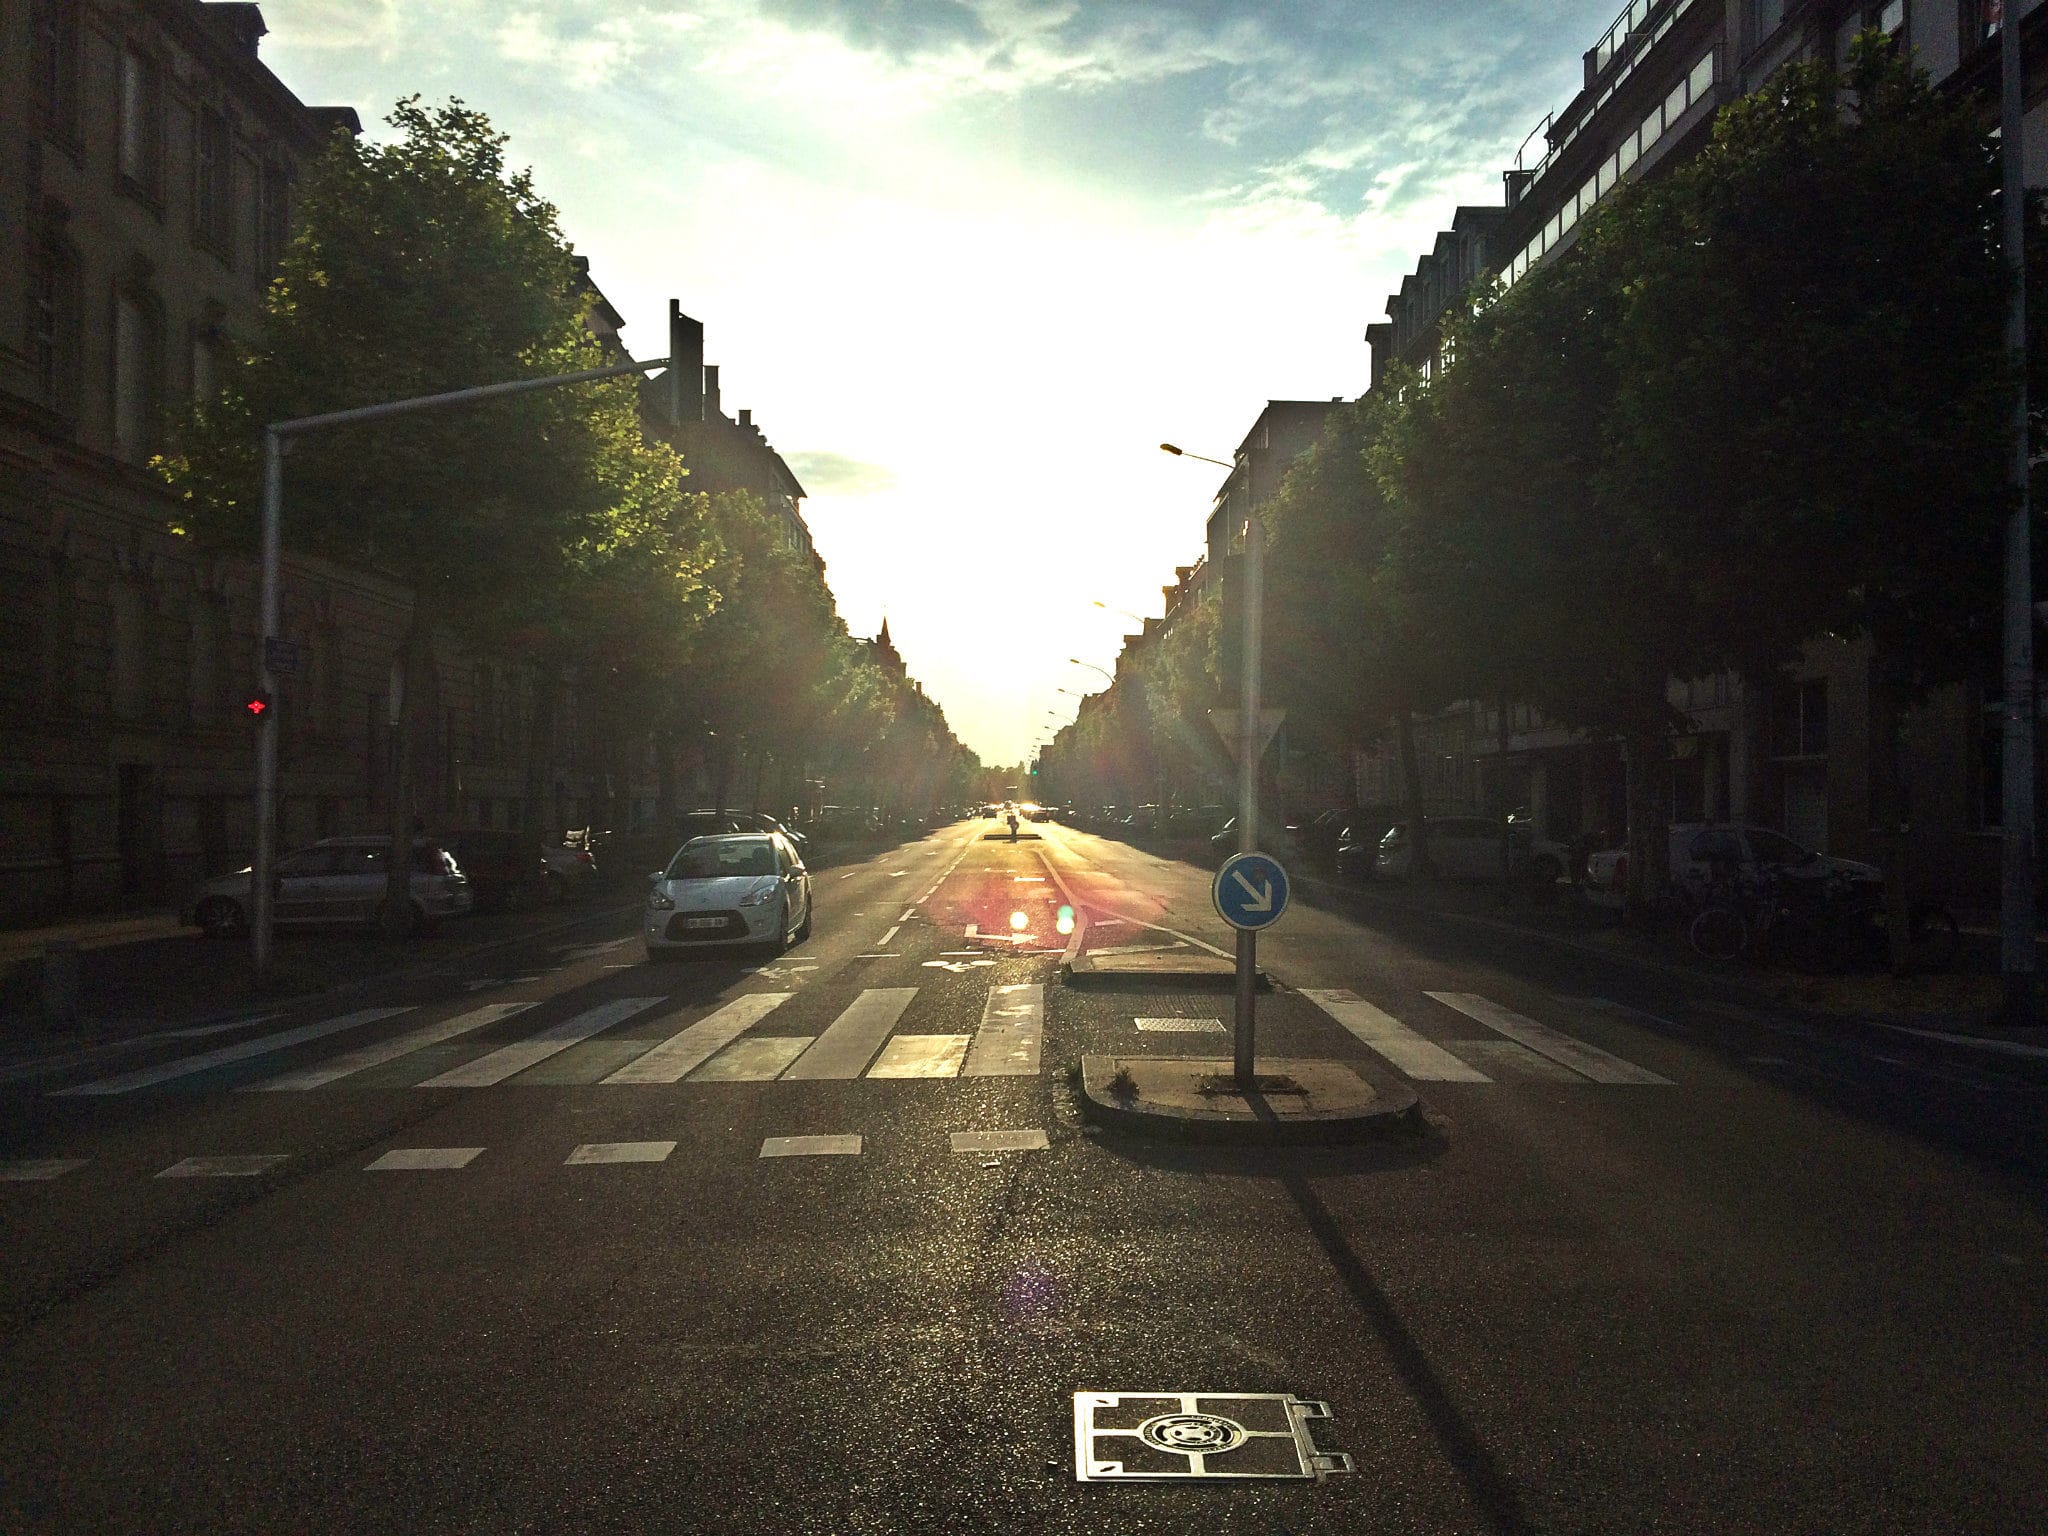 L'avenue des Vosges, une bien belle manière d'aller vers 2020 ? (Photo JFG / Rue89 Strasbourg / cc)